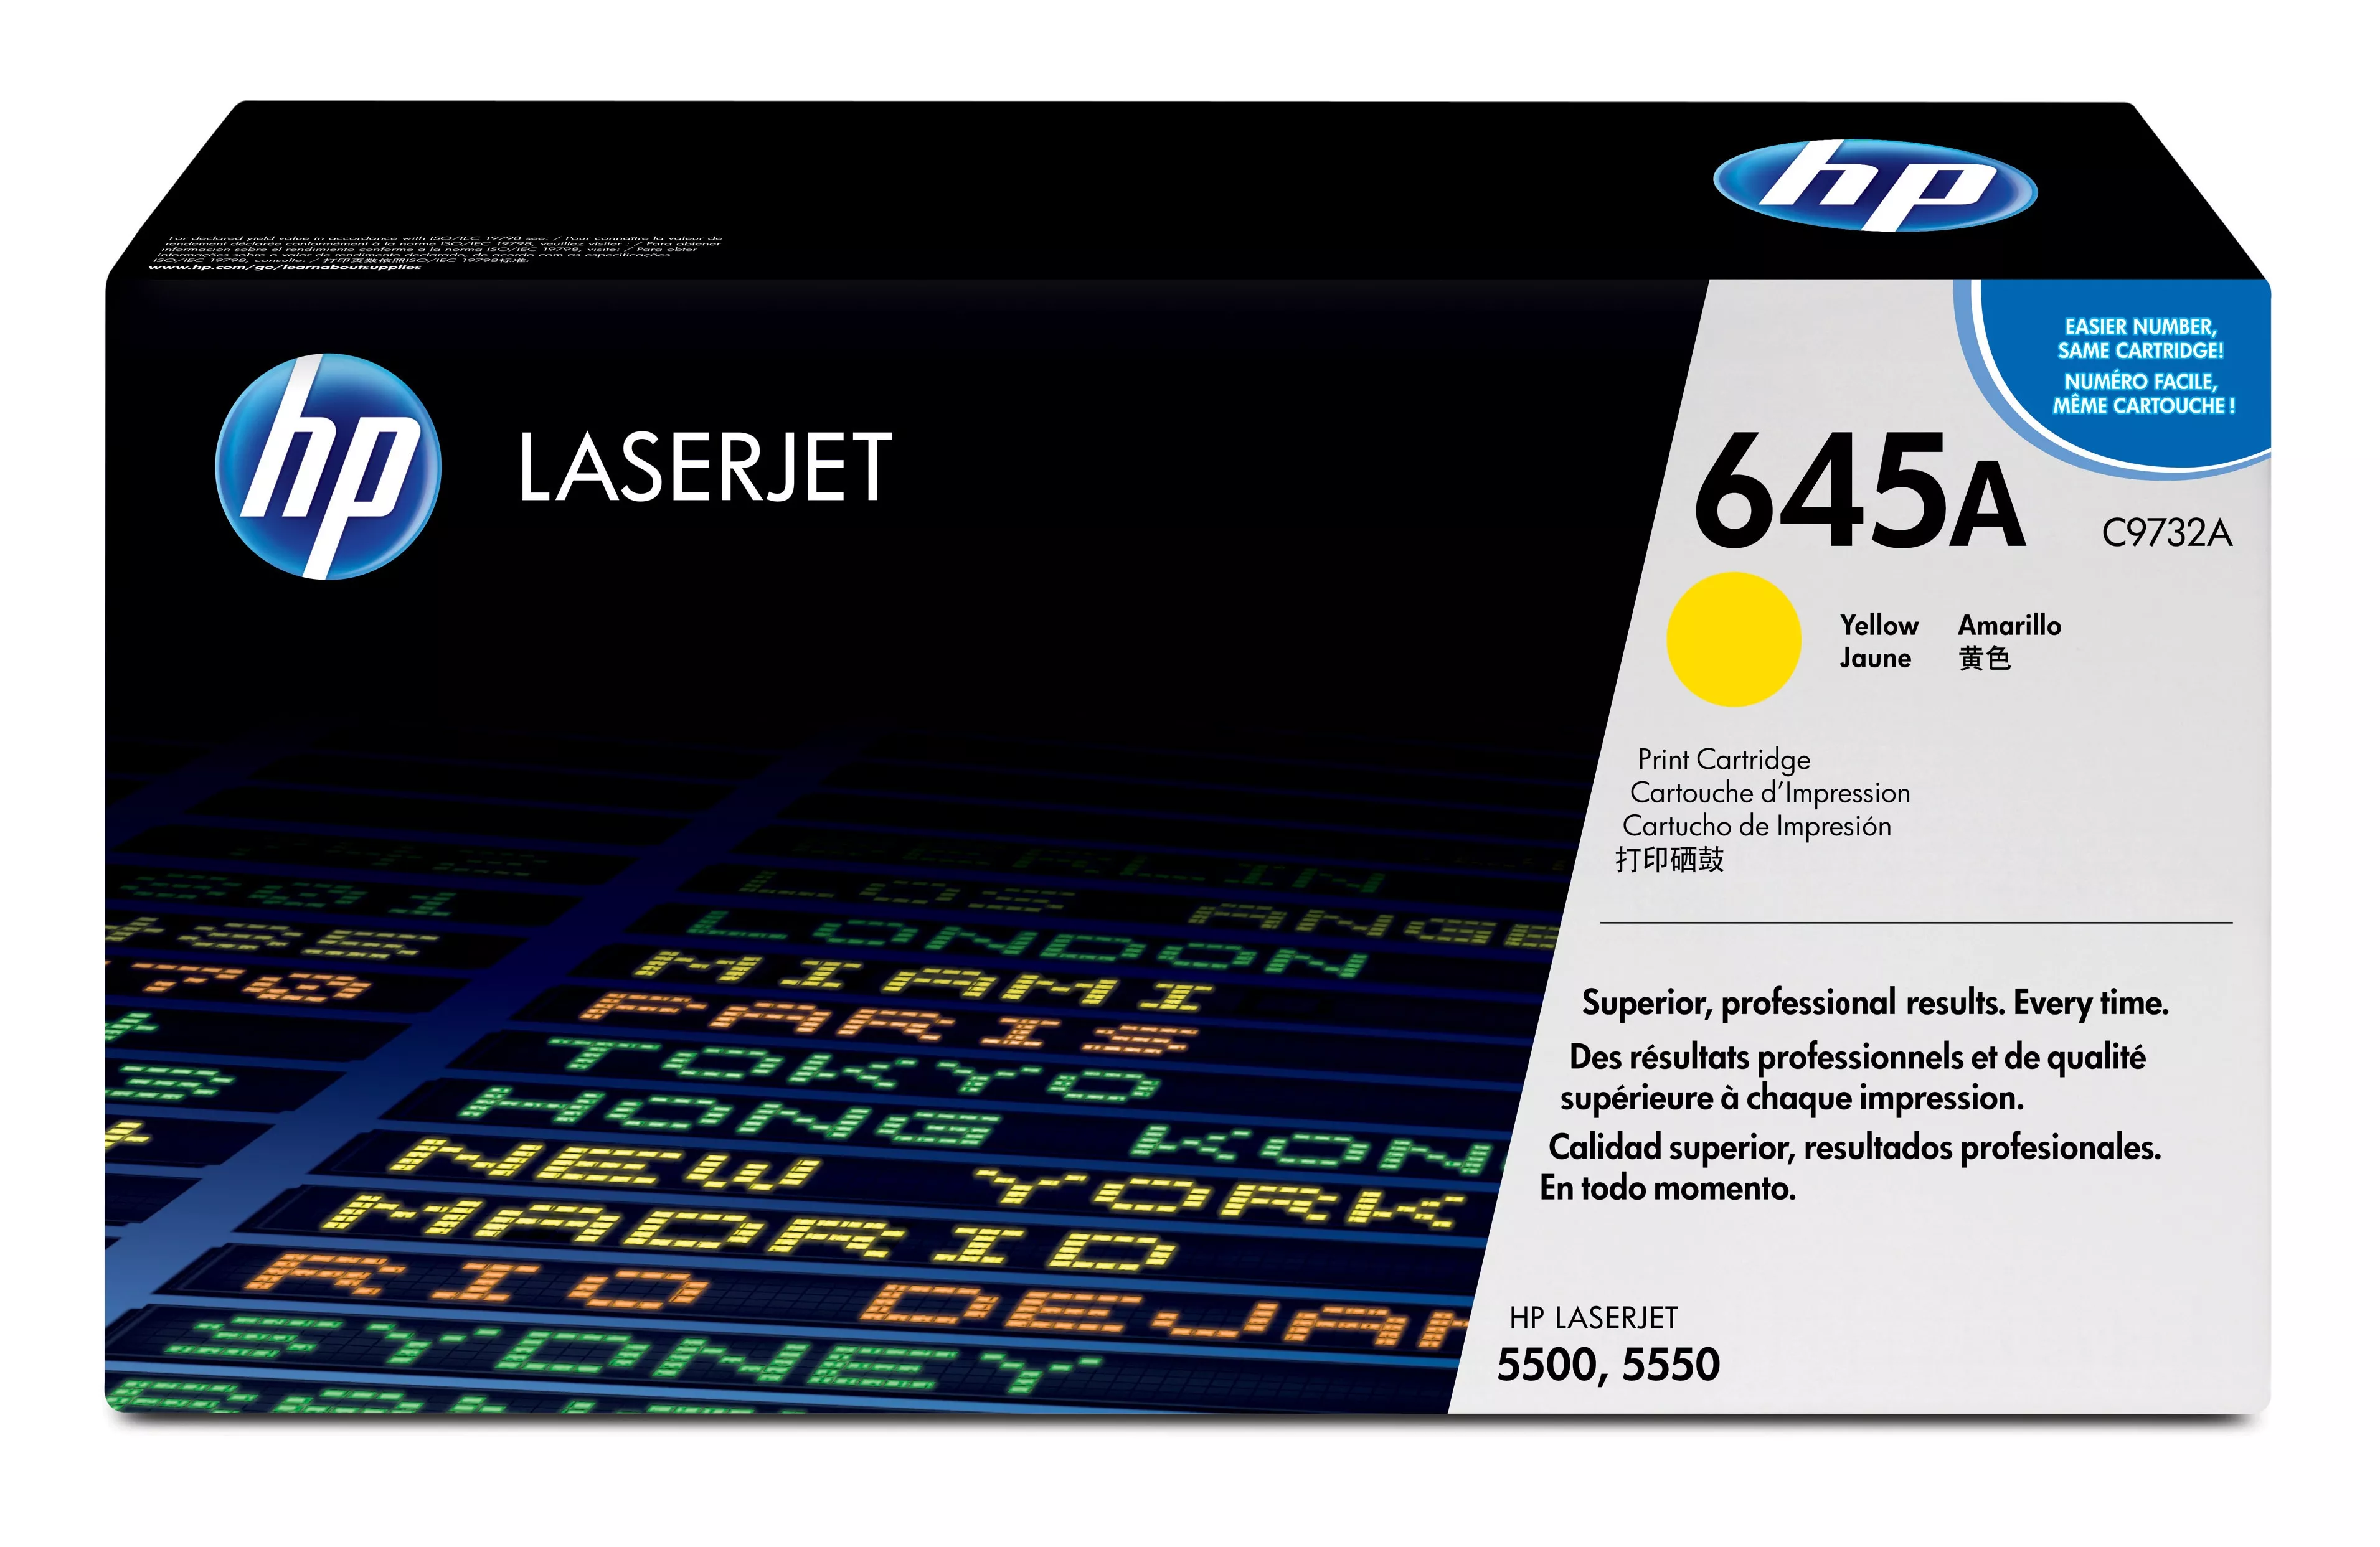 Achat HP 645A original Colour LaserJet Toner cartridge C9732A au meilleur prix